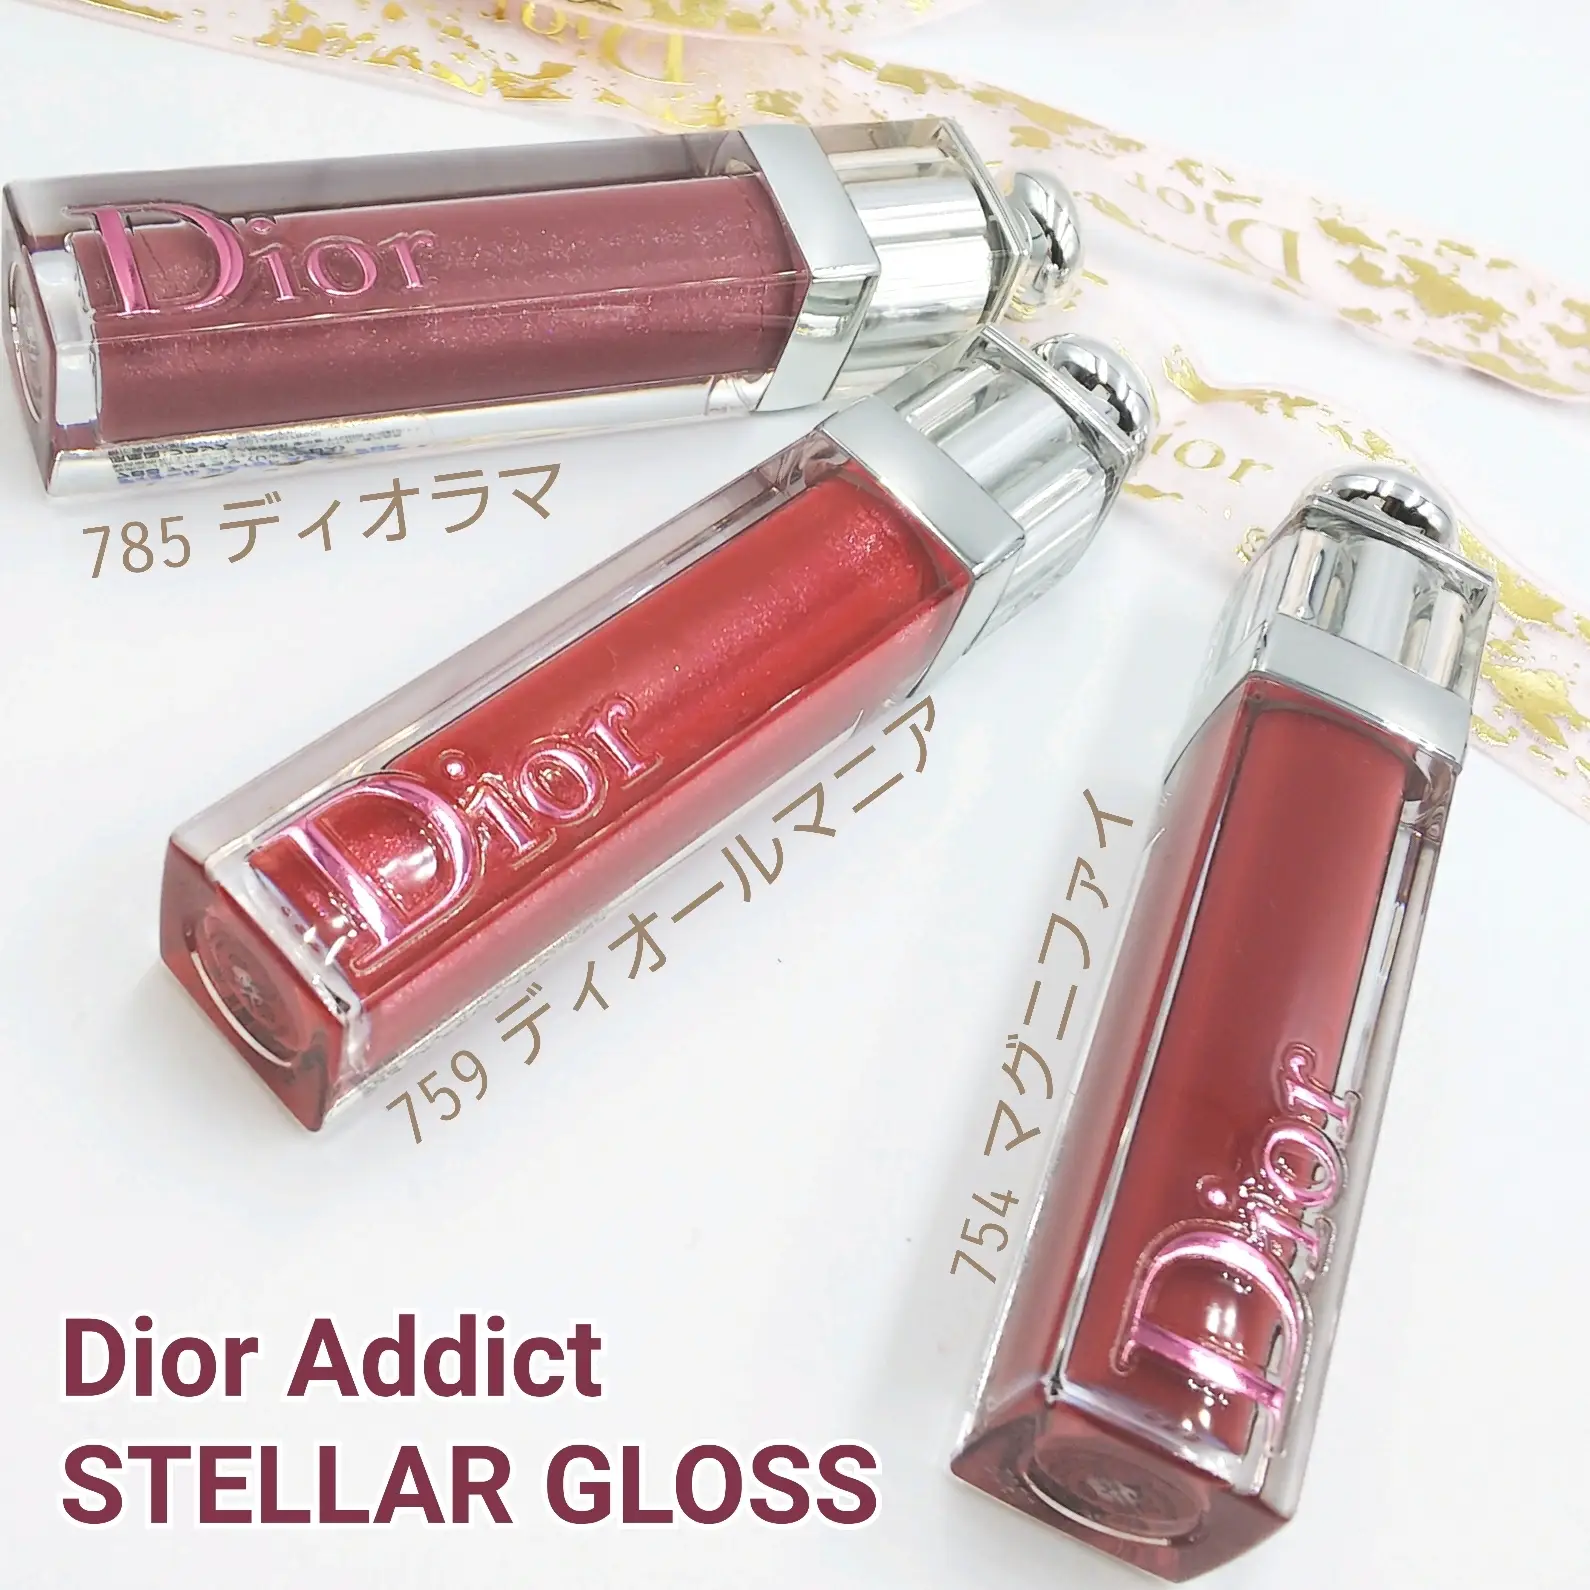 注目ショップ・ブランドのギフト Dior アディクト ステラー グロス 754